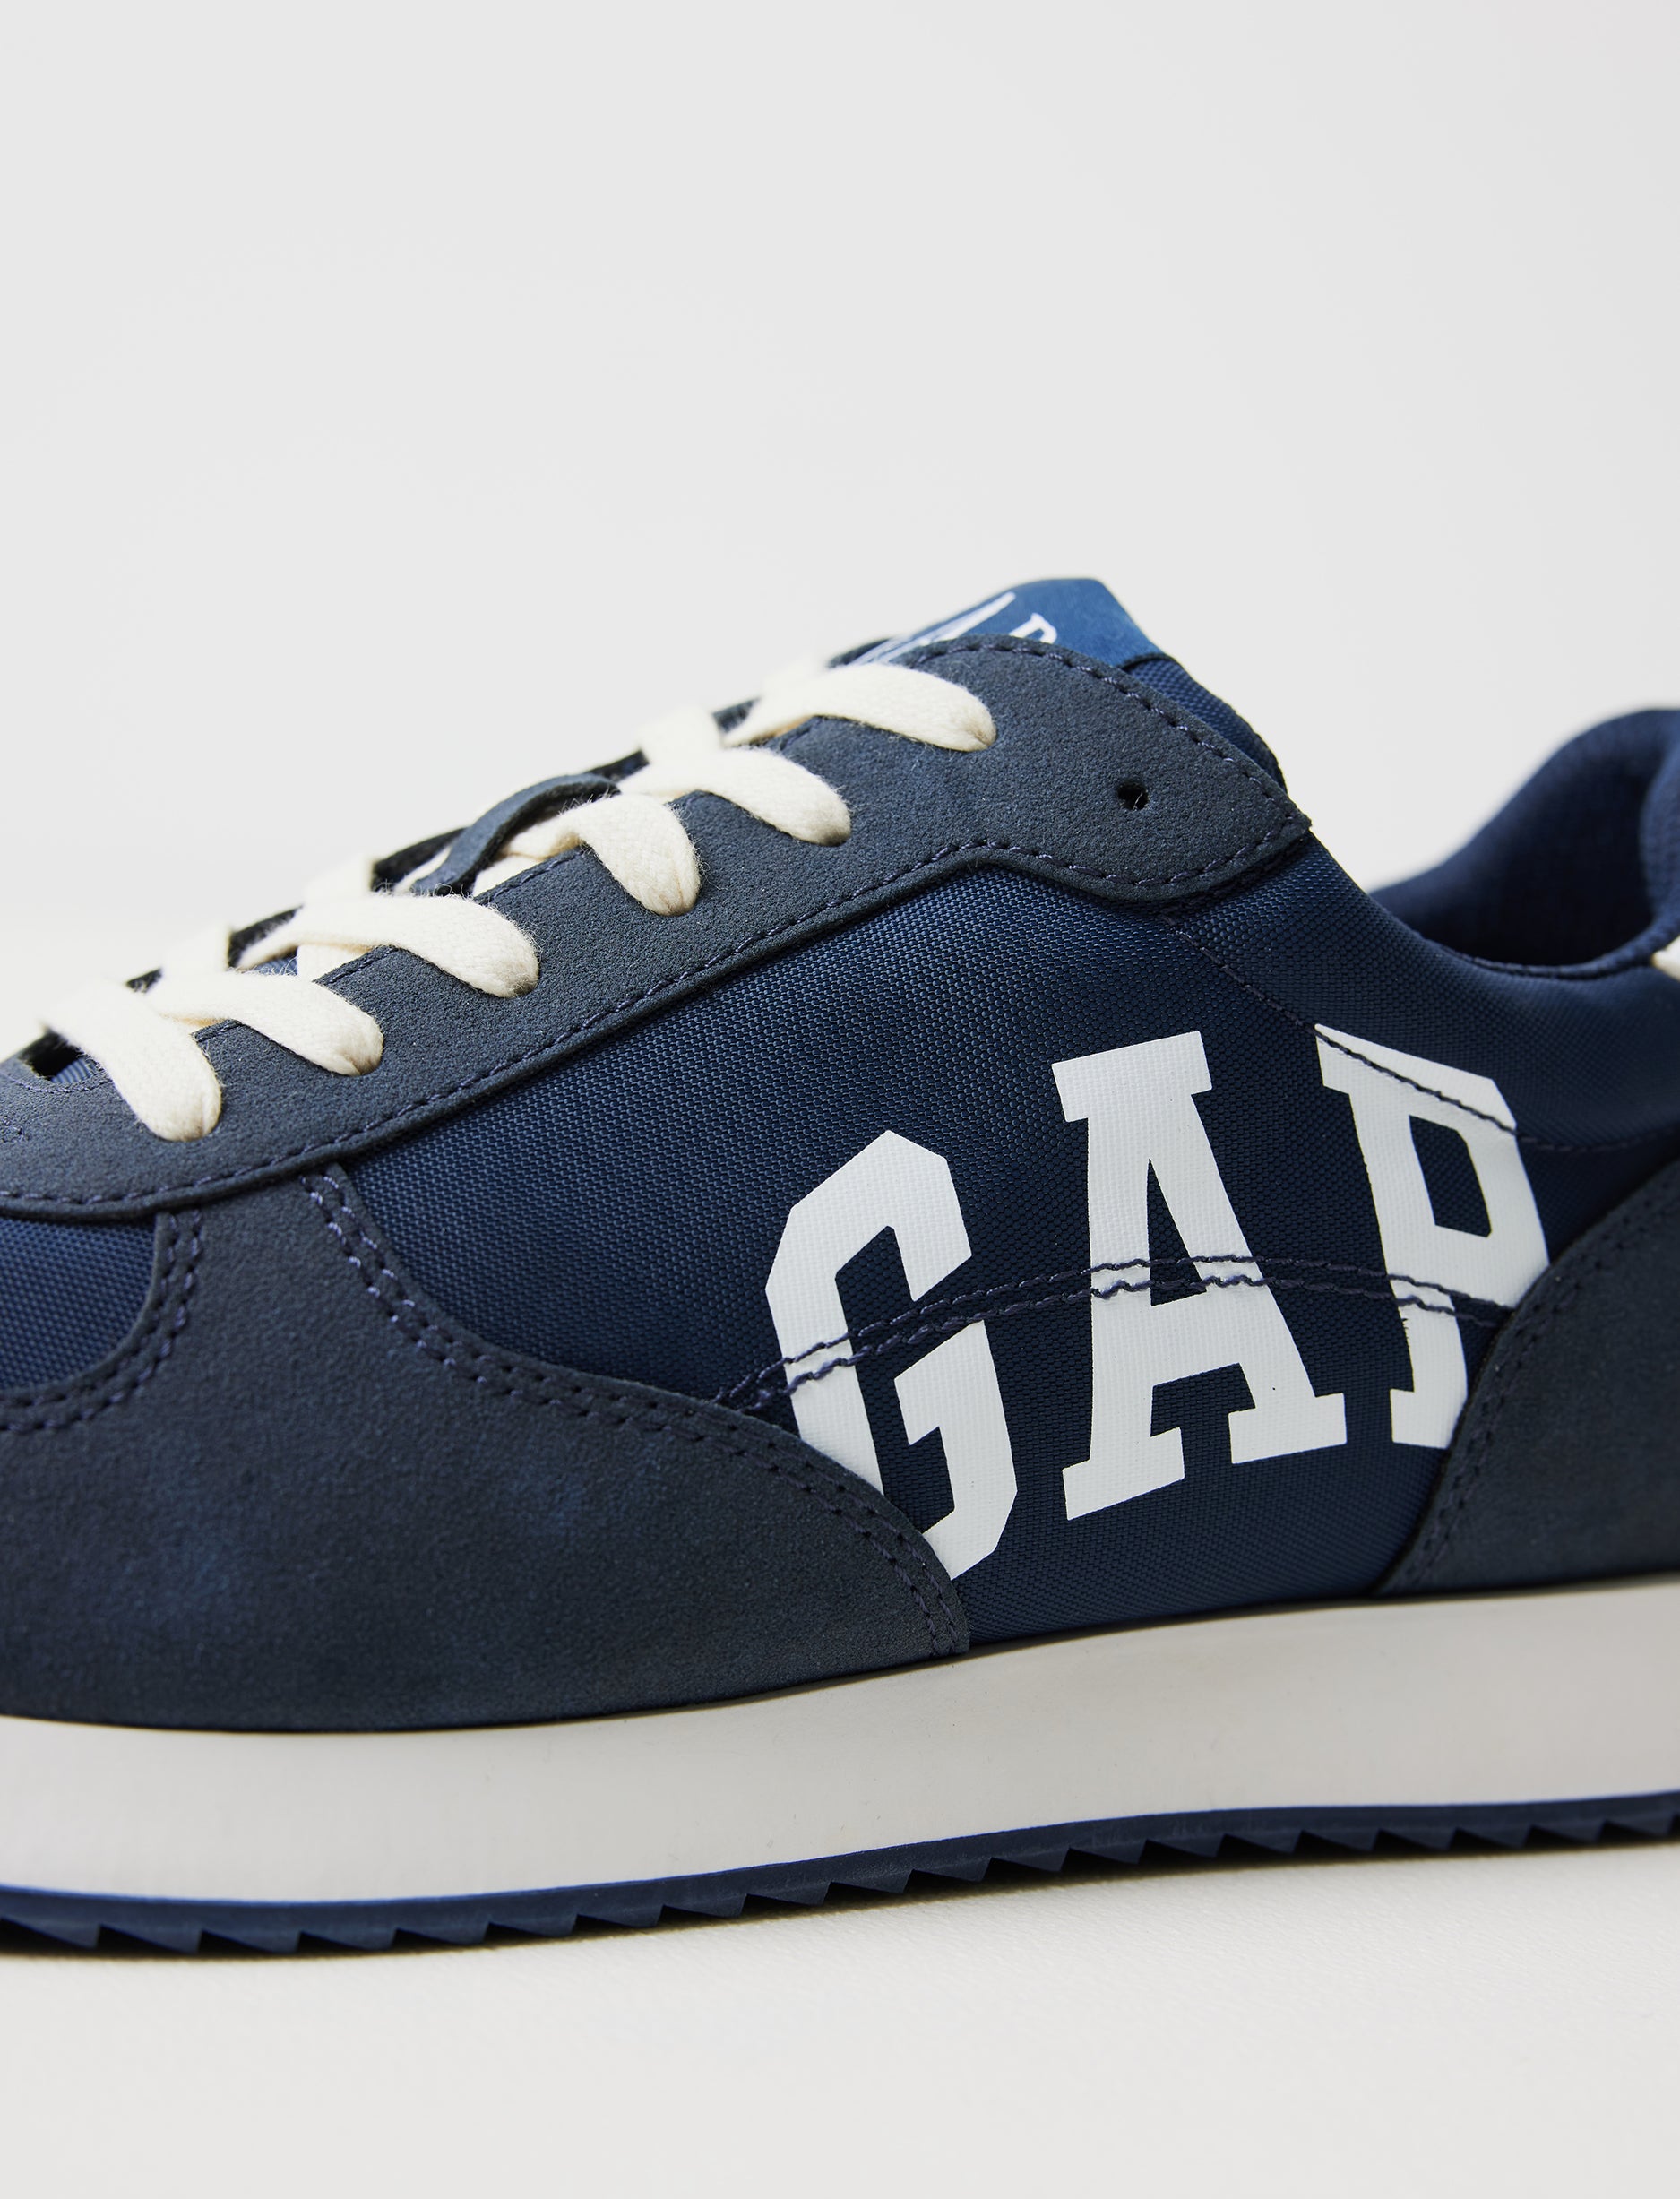 Gap Nashville - נעלי סניקרס גאפ לילדים בצבע כחול